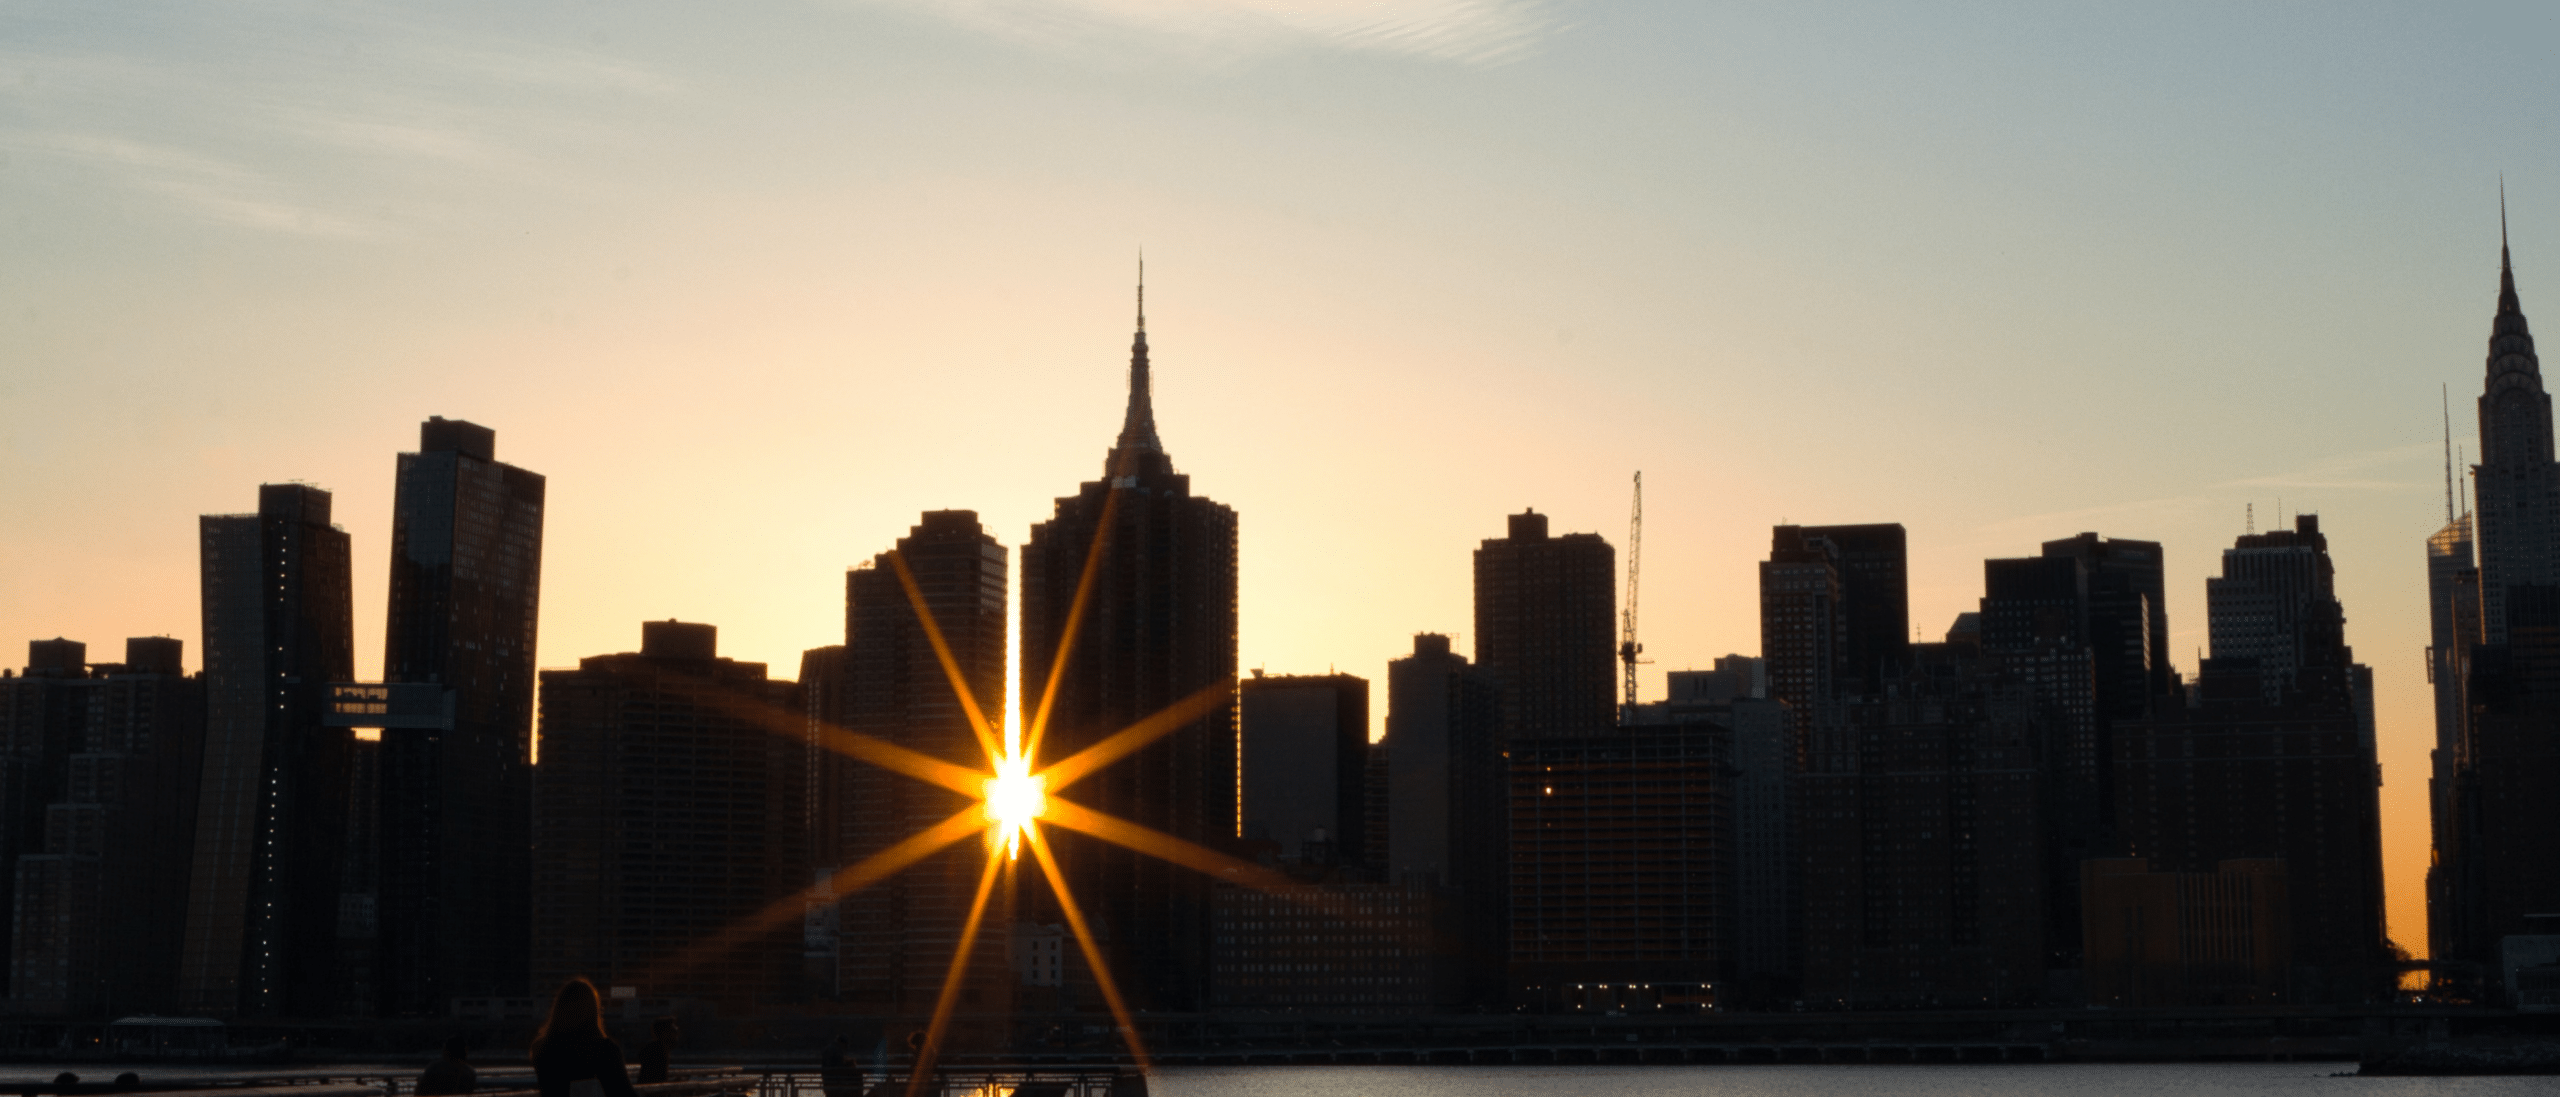 Light from sunrise breaking through New York City skyline